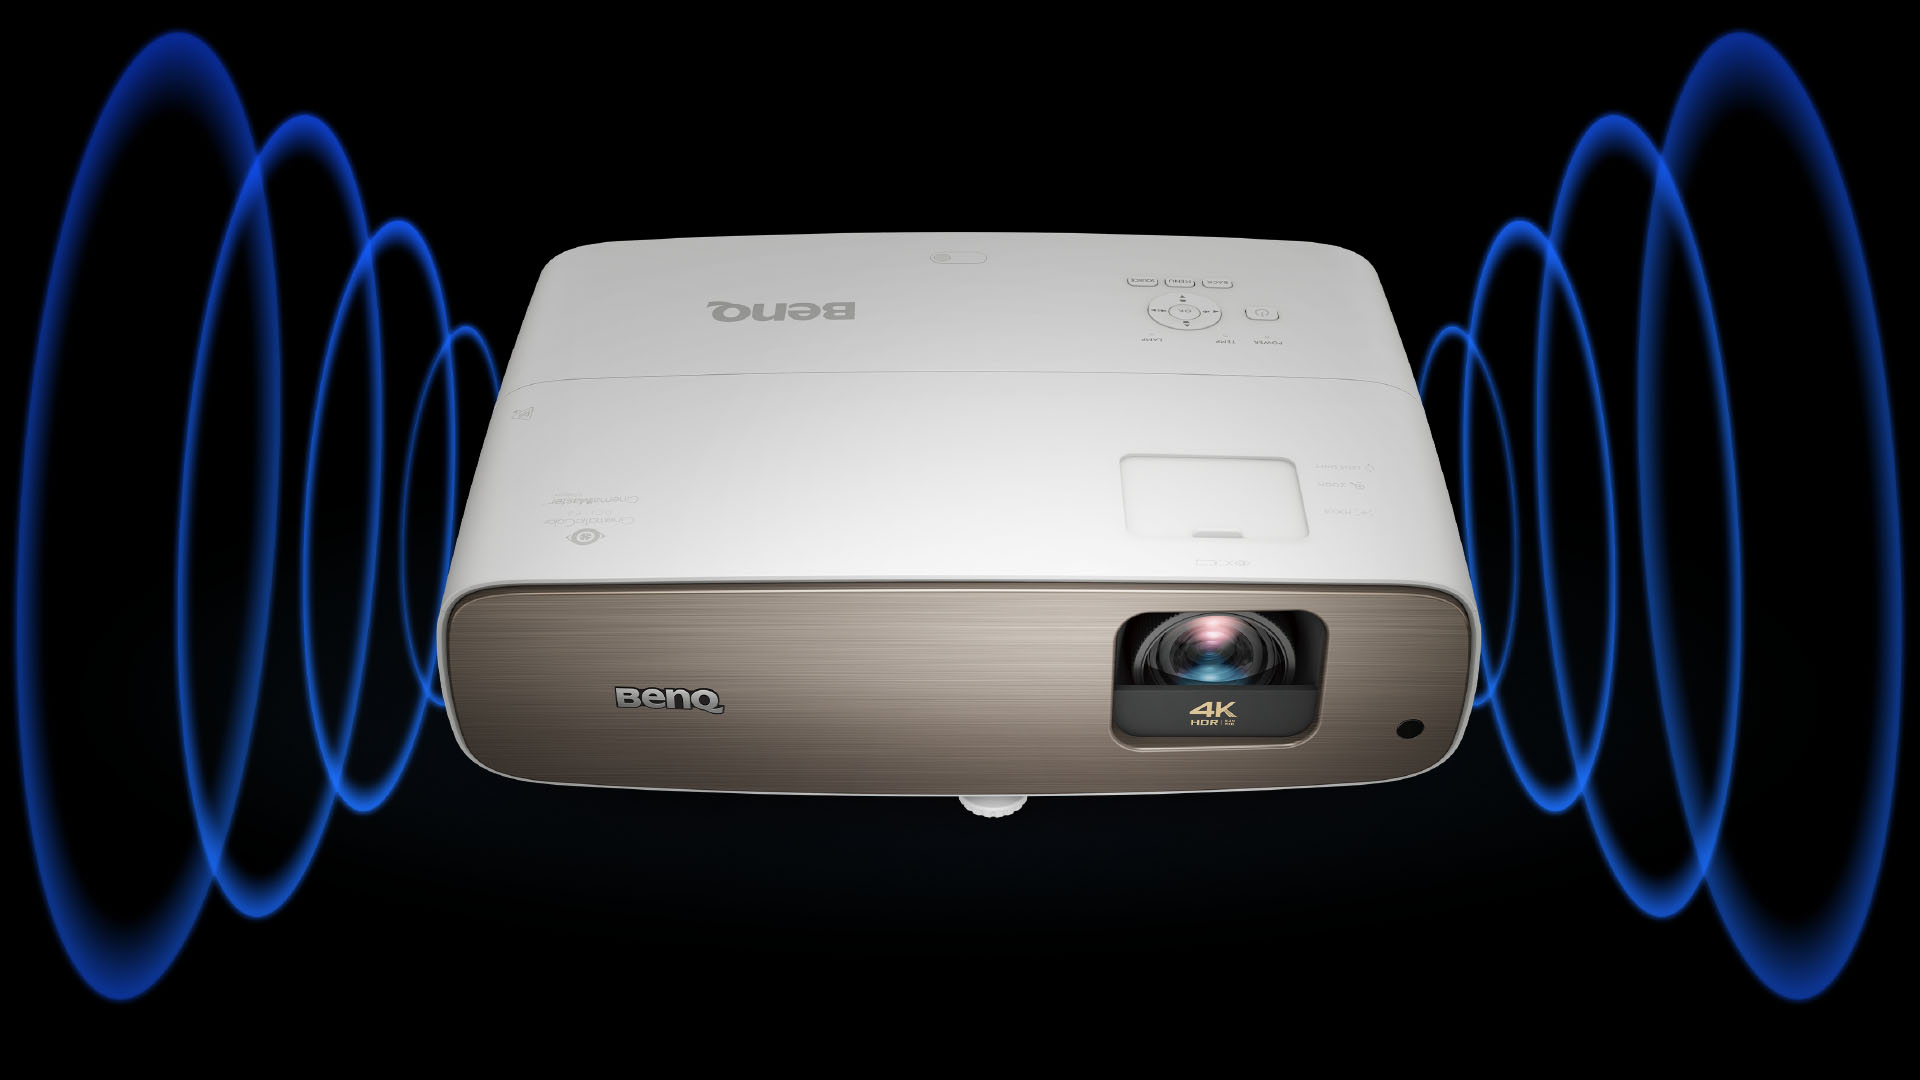 BenQ audio-enhancing technology